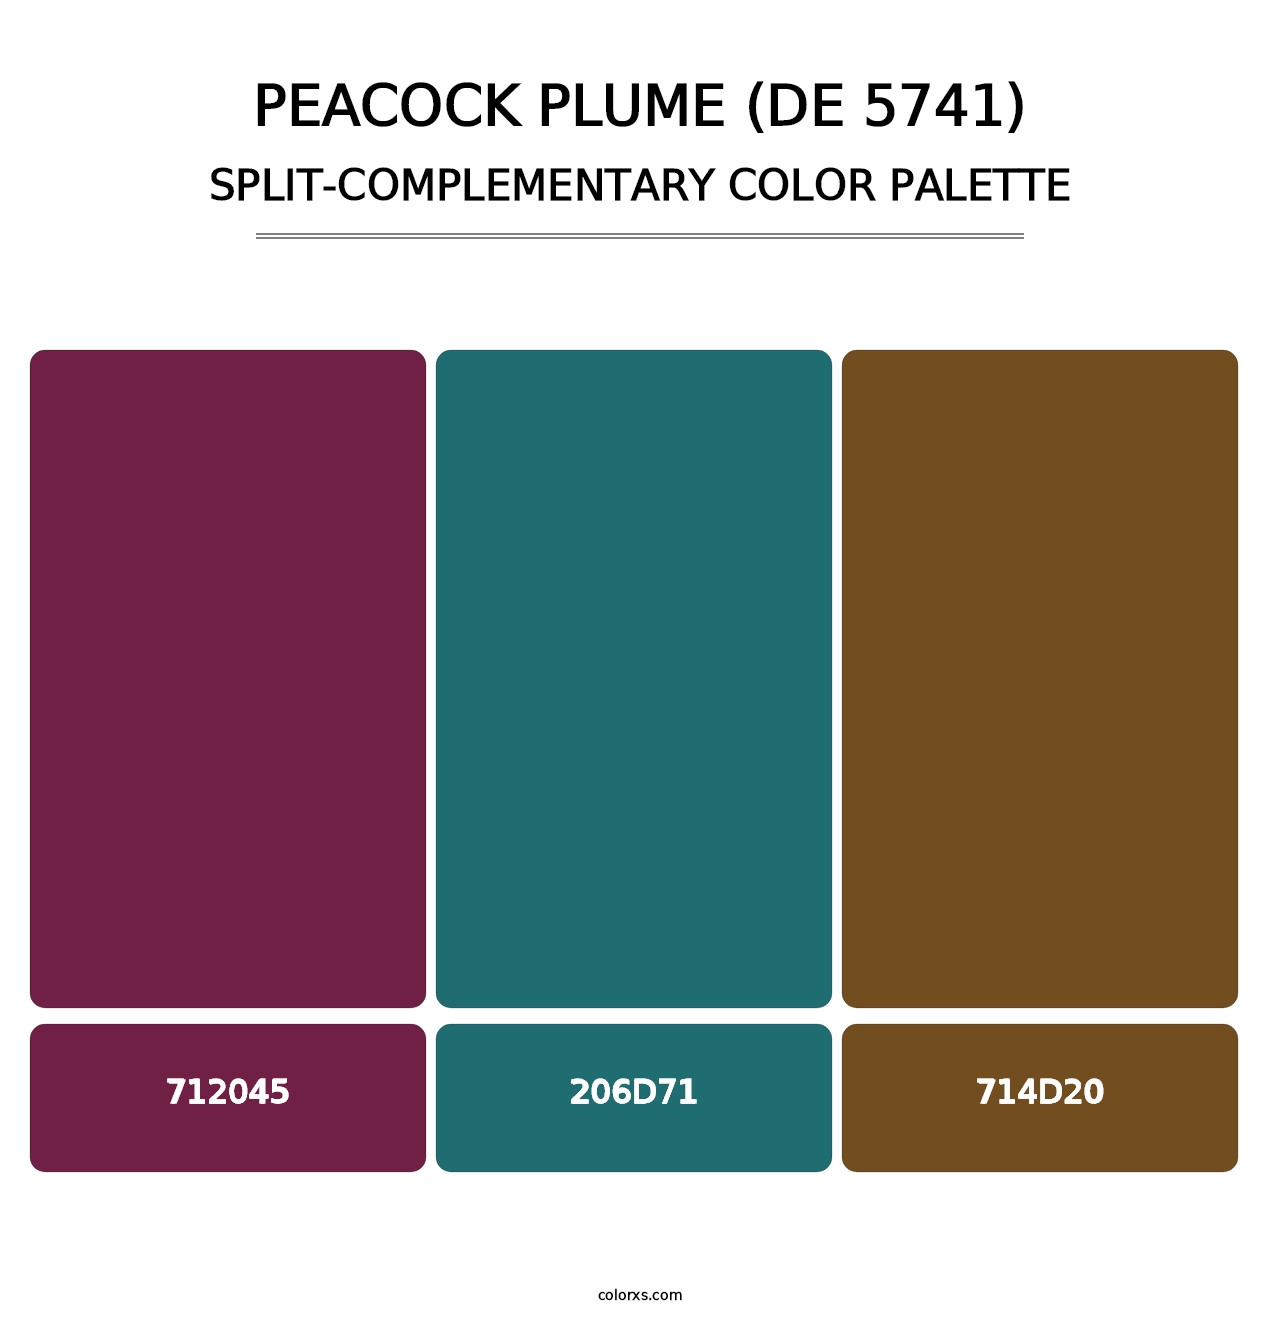 Peacock Plume (DE 5741) - Split-Complementary Color Palette